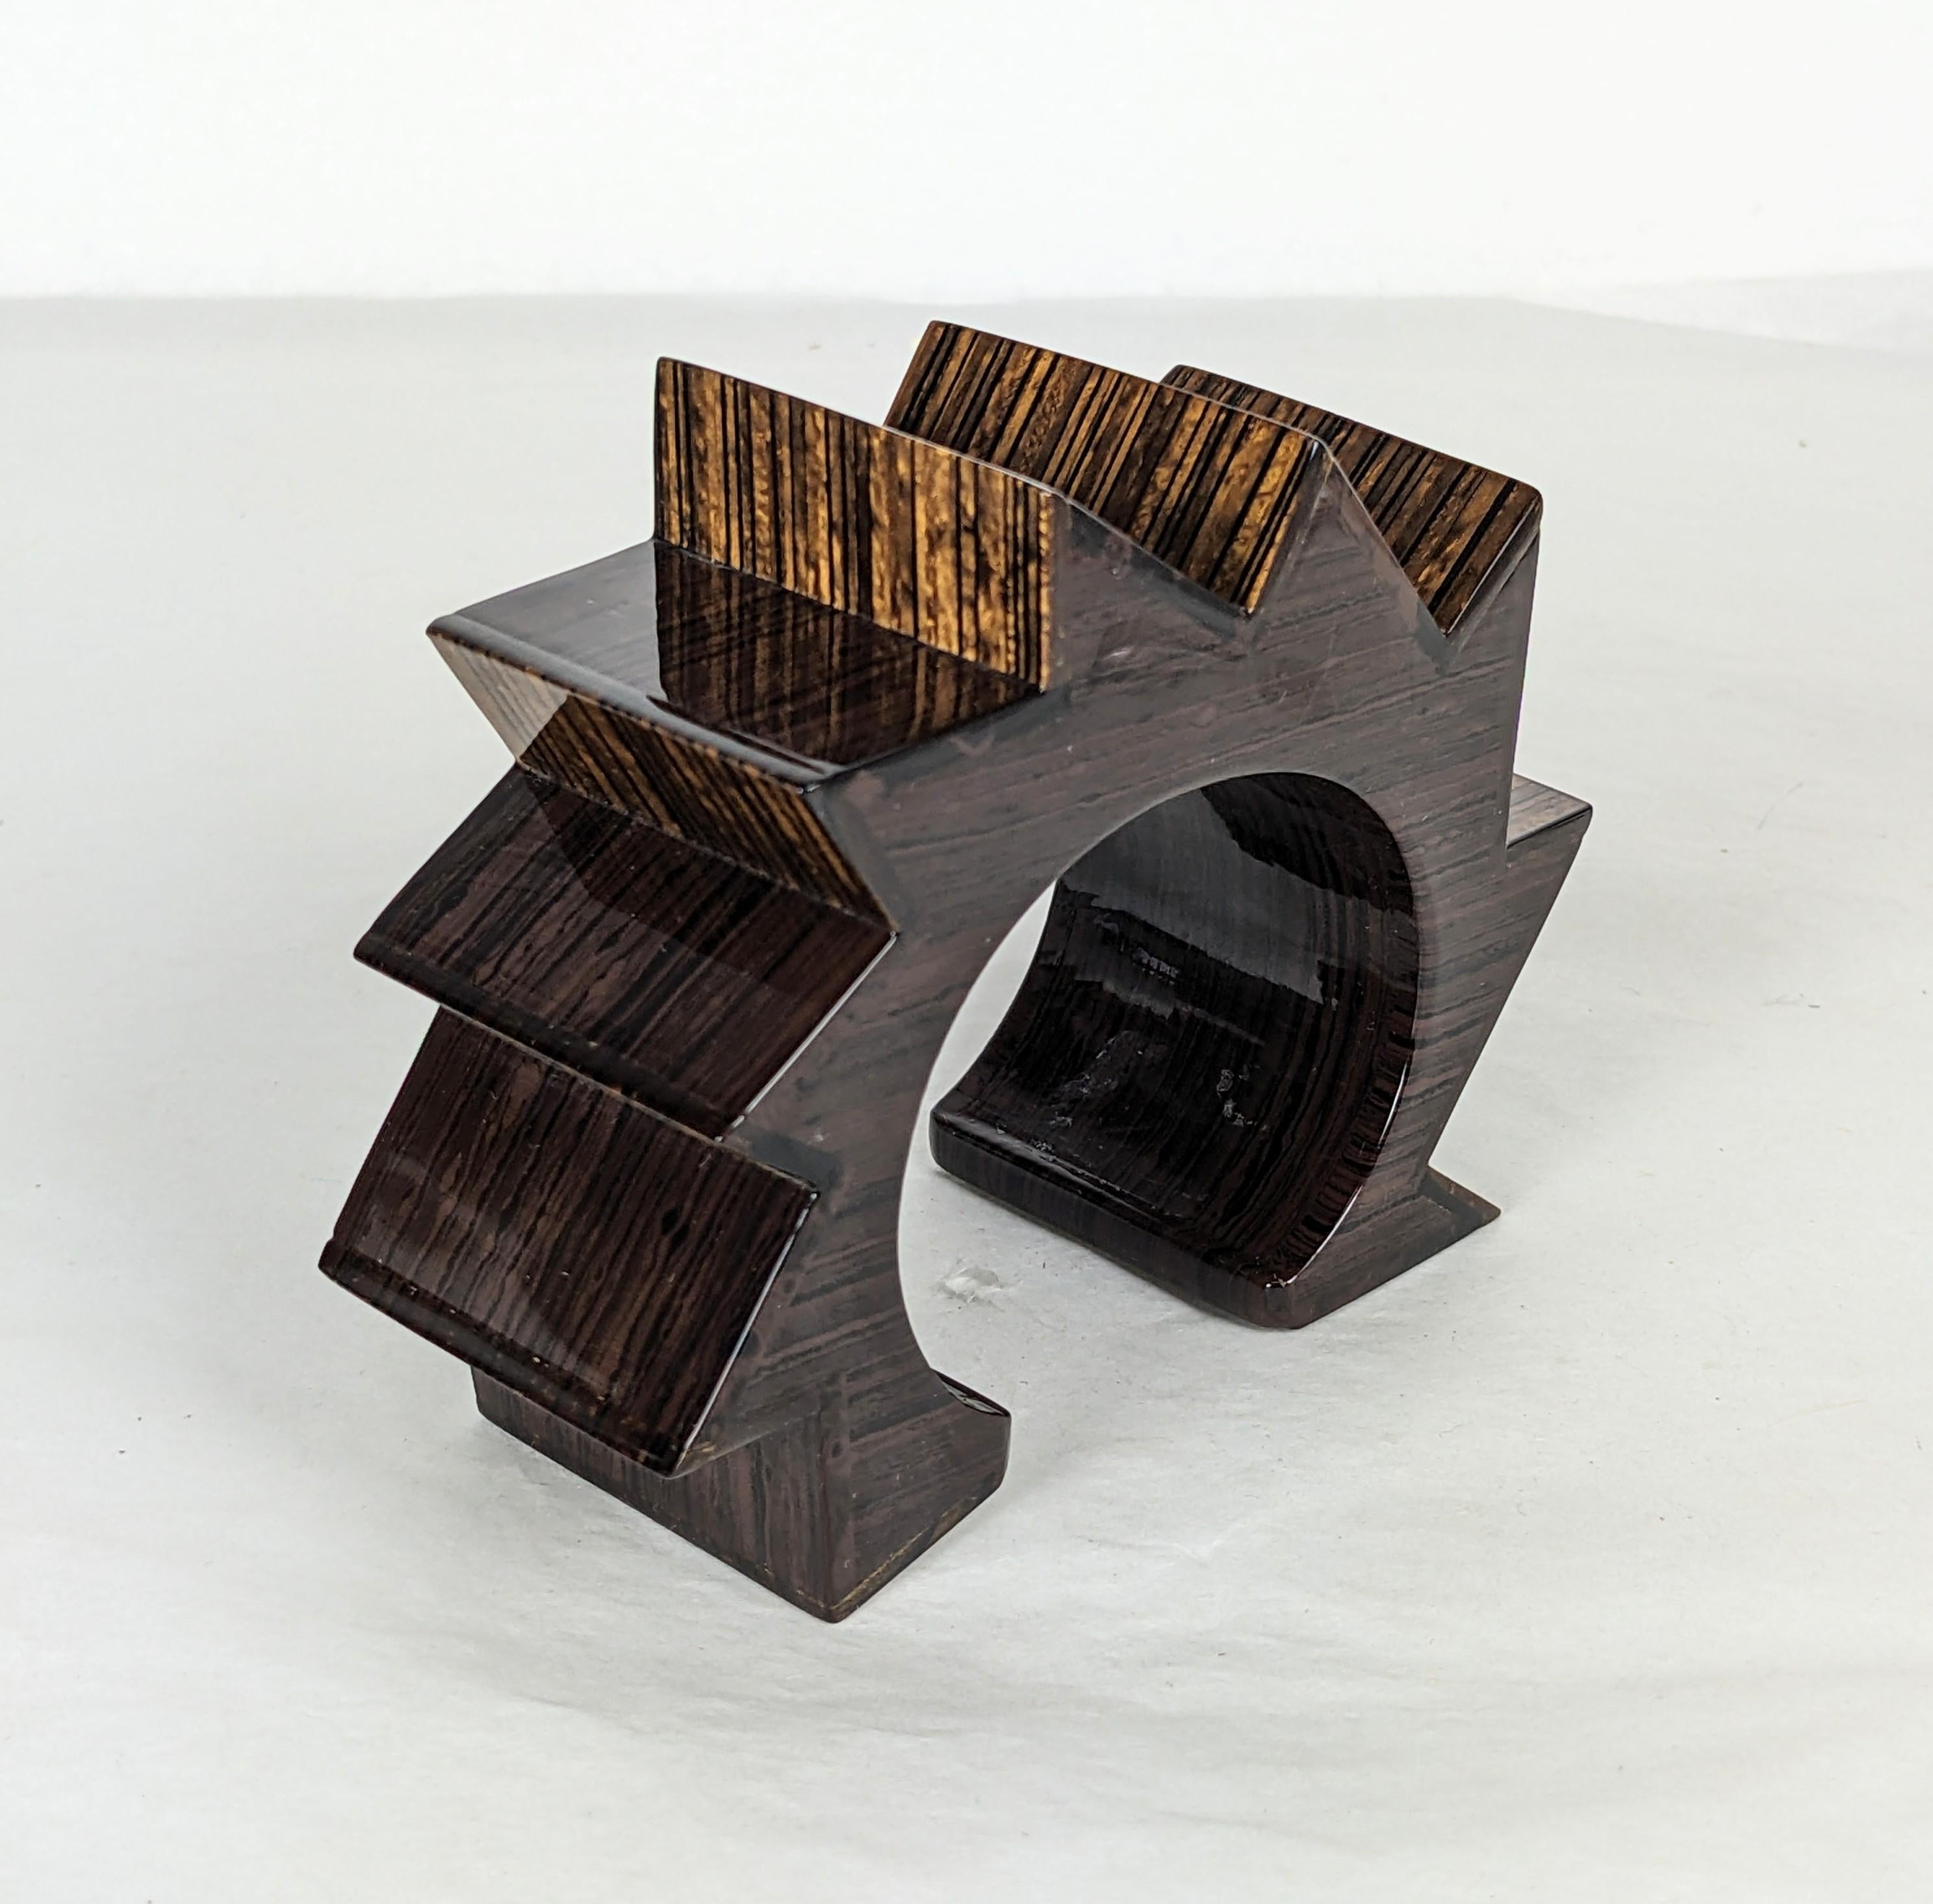 Außergewöhnliches Yves Saint Laurent Post Modernist Manschettenarmband bestehend aus geometrischen Art Deco Formen auf einem hohlen, leichten Kern mit einem hochglanzpolierten  lackiertes Holzfurnier mit Ebenholz-Makassar-Beize. Diese Art der